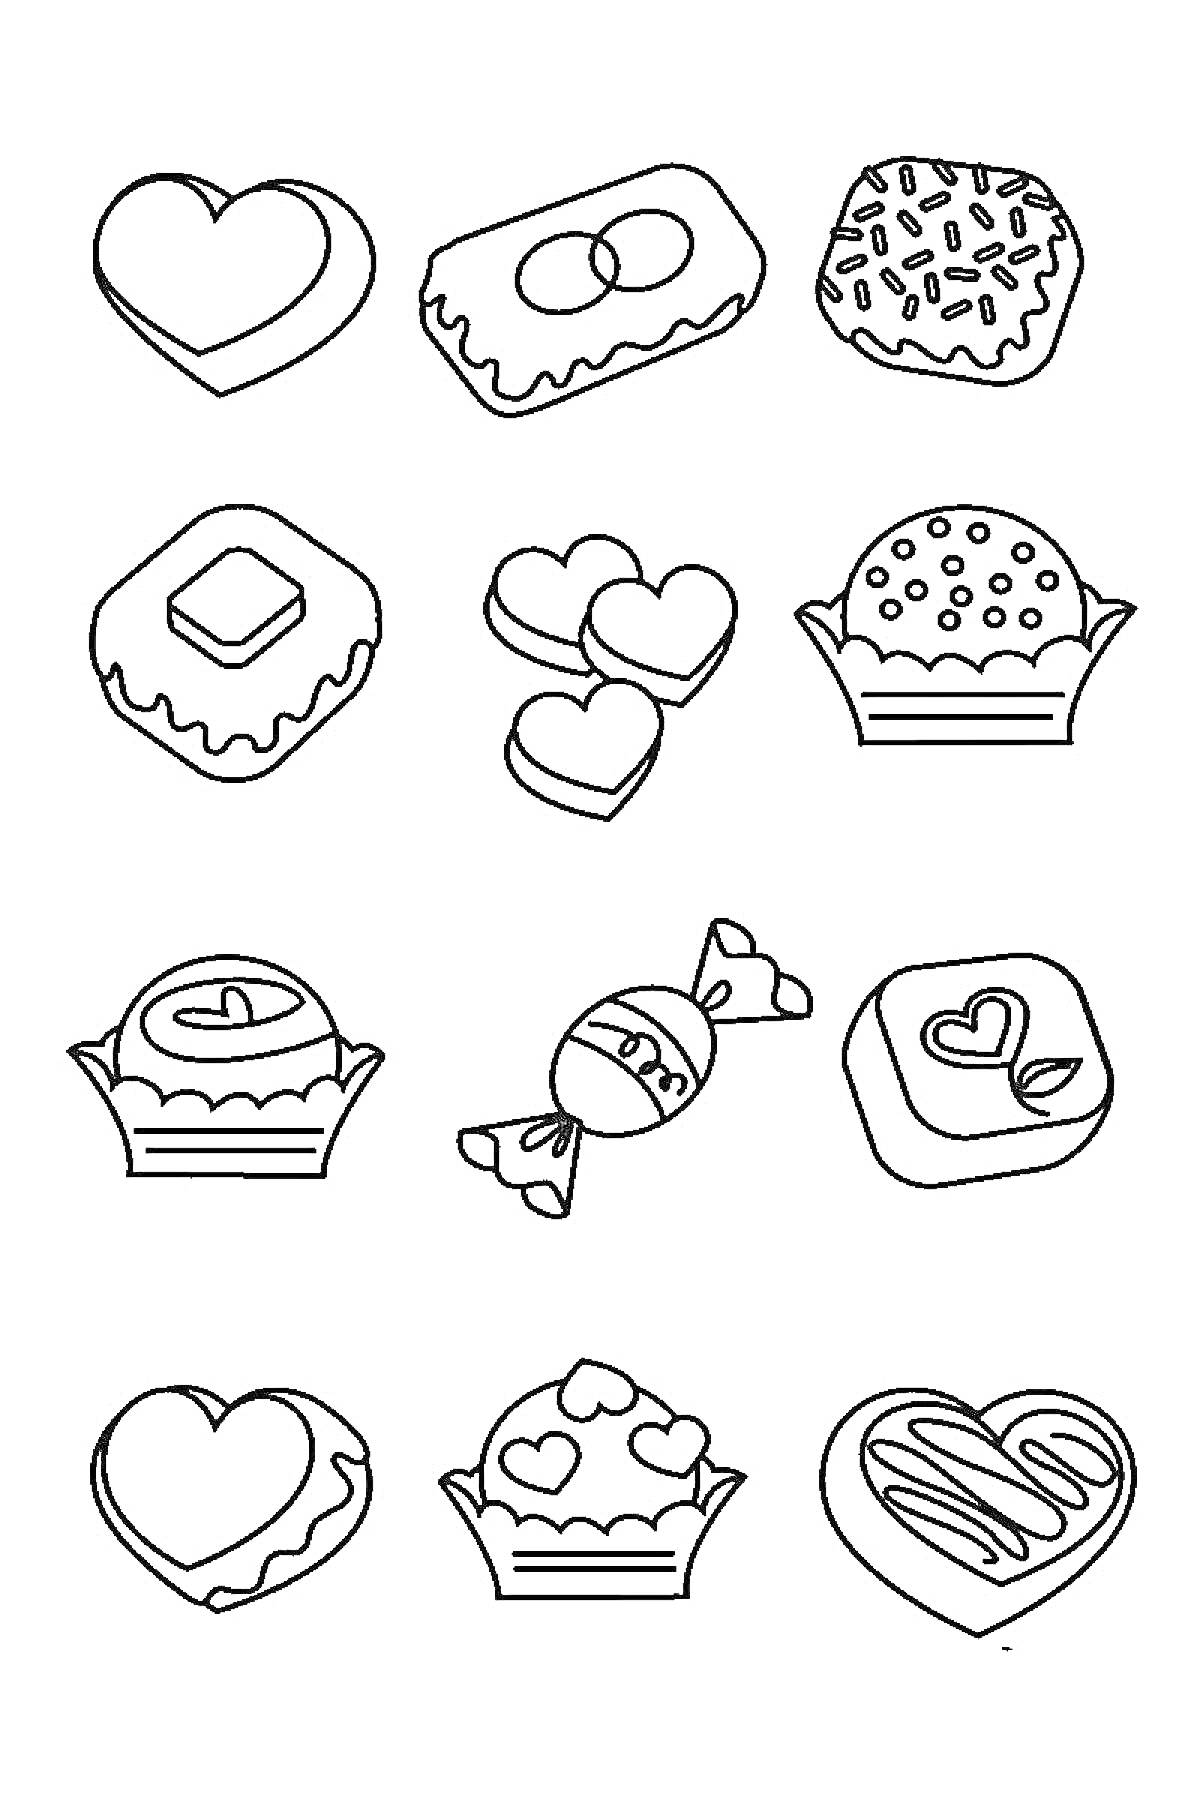 Раскраска Набор сладостей: сердце, прямоугольное печенье с яйцами, круглый кекс с посыпкой, квадратное печенье с кубиком, два сердечка, кекс с глазурью и точками, конфетка в обертке, квадратное печенье с сердечком, сердце, кекс с точками, сердце с полосками